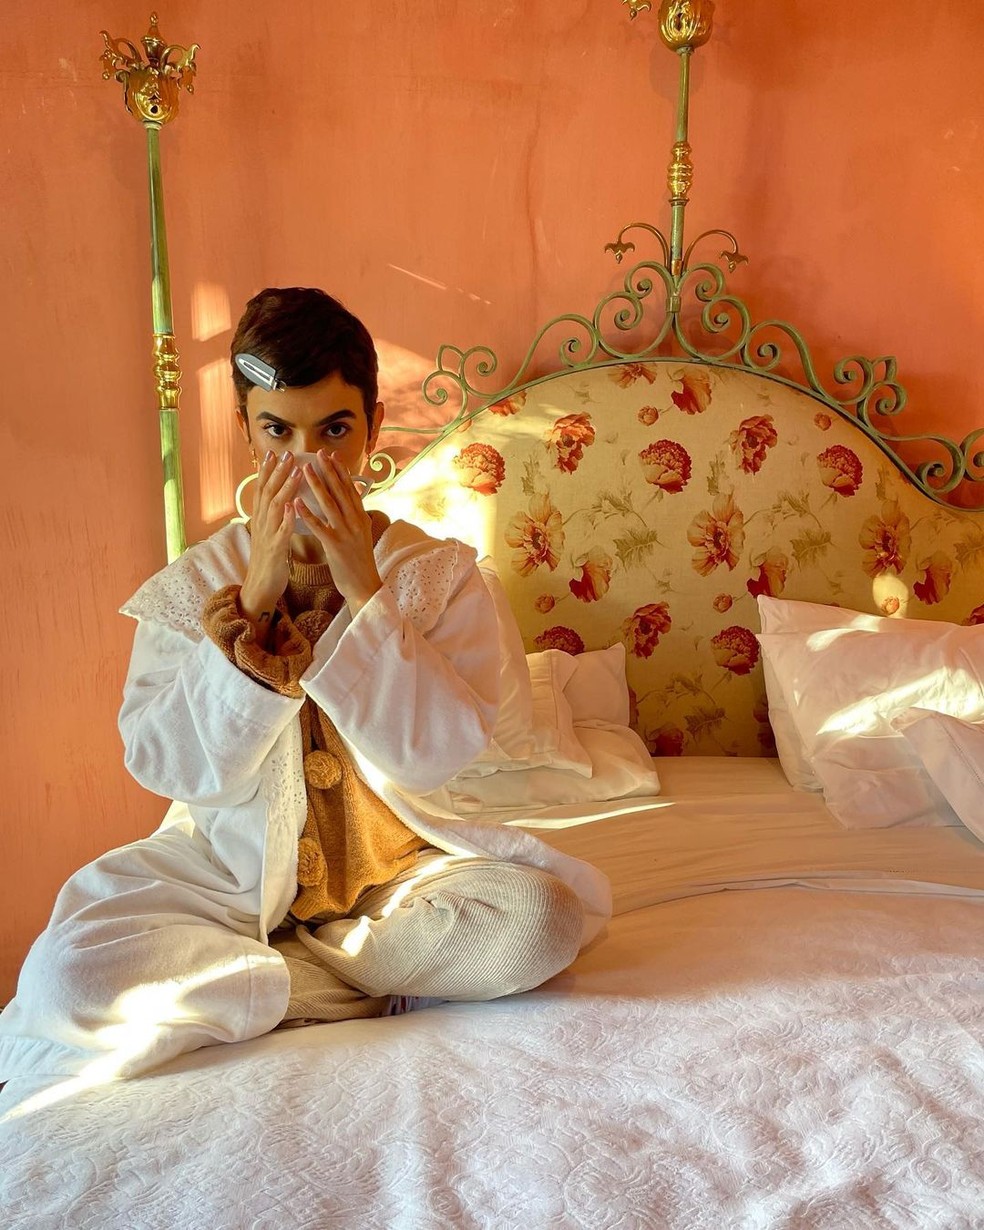 A cantora Manu Gavassi combina o seu pijama com a decoração do quarto, elevando o ritual de conforto para um novo nível. Amamos! — Foto: Instagram @manugavassi